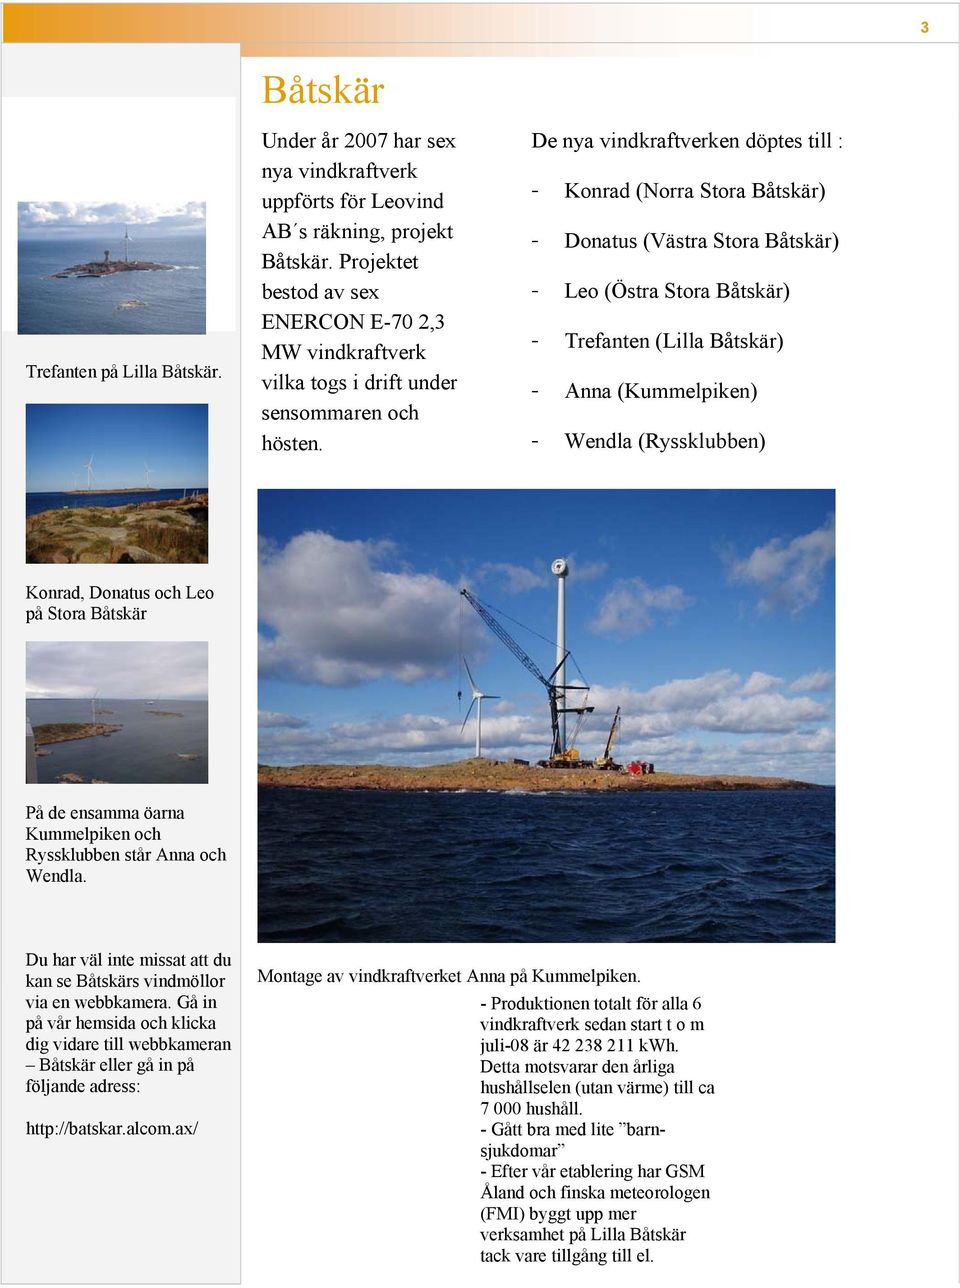 De nya vindkraftverken döptes till : - Konrad (Norra Stora Båtskär) - Donatus (Västra Stora Båtskär) - Leo (Östra Stora Båtskär) - Trefanten (Lilla Båtskär) - Anna (Kummelpiken) - Wendla